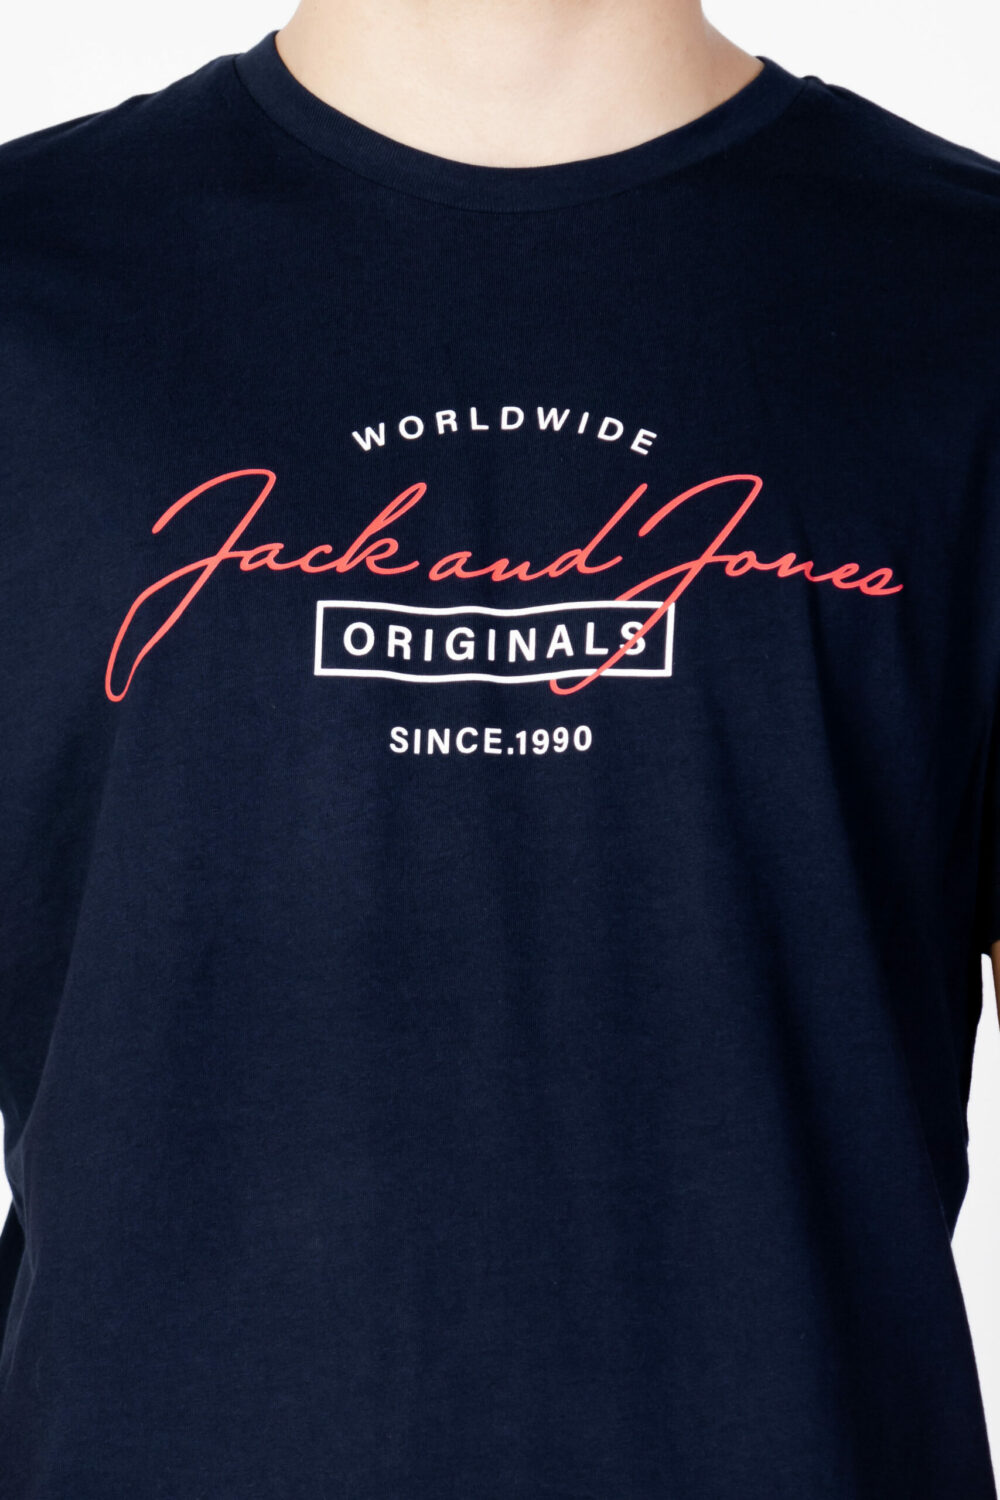 T-shirt Jack Jones Blu - Foto 2